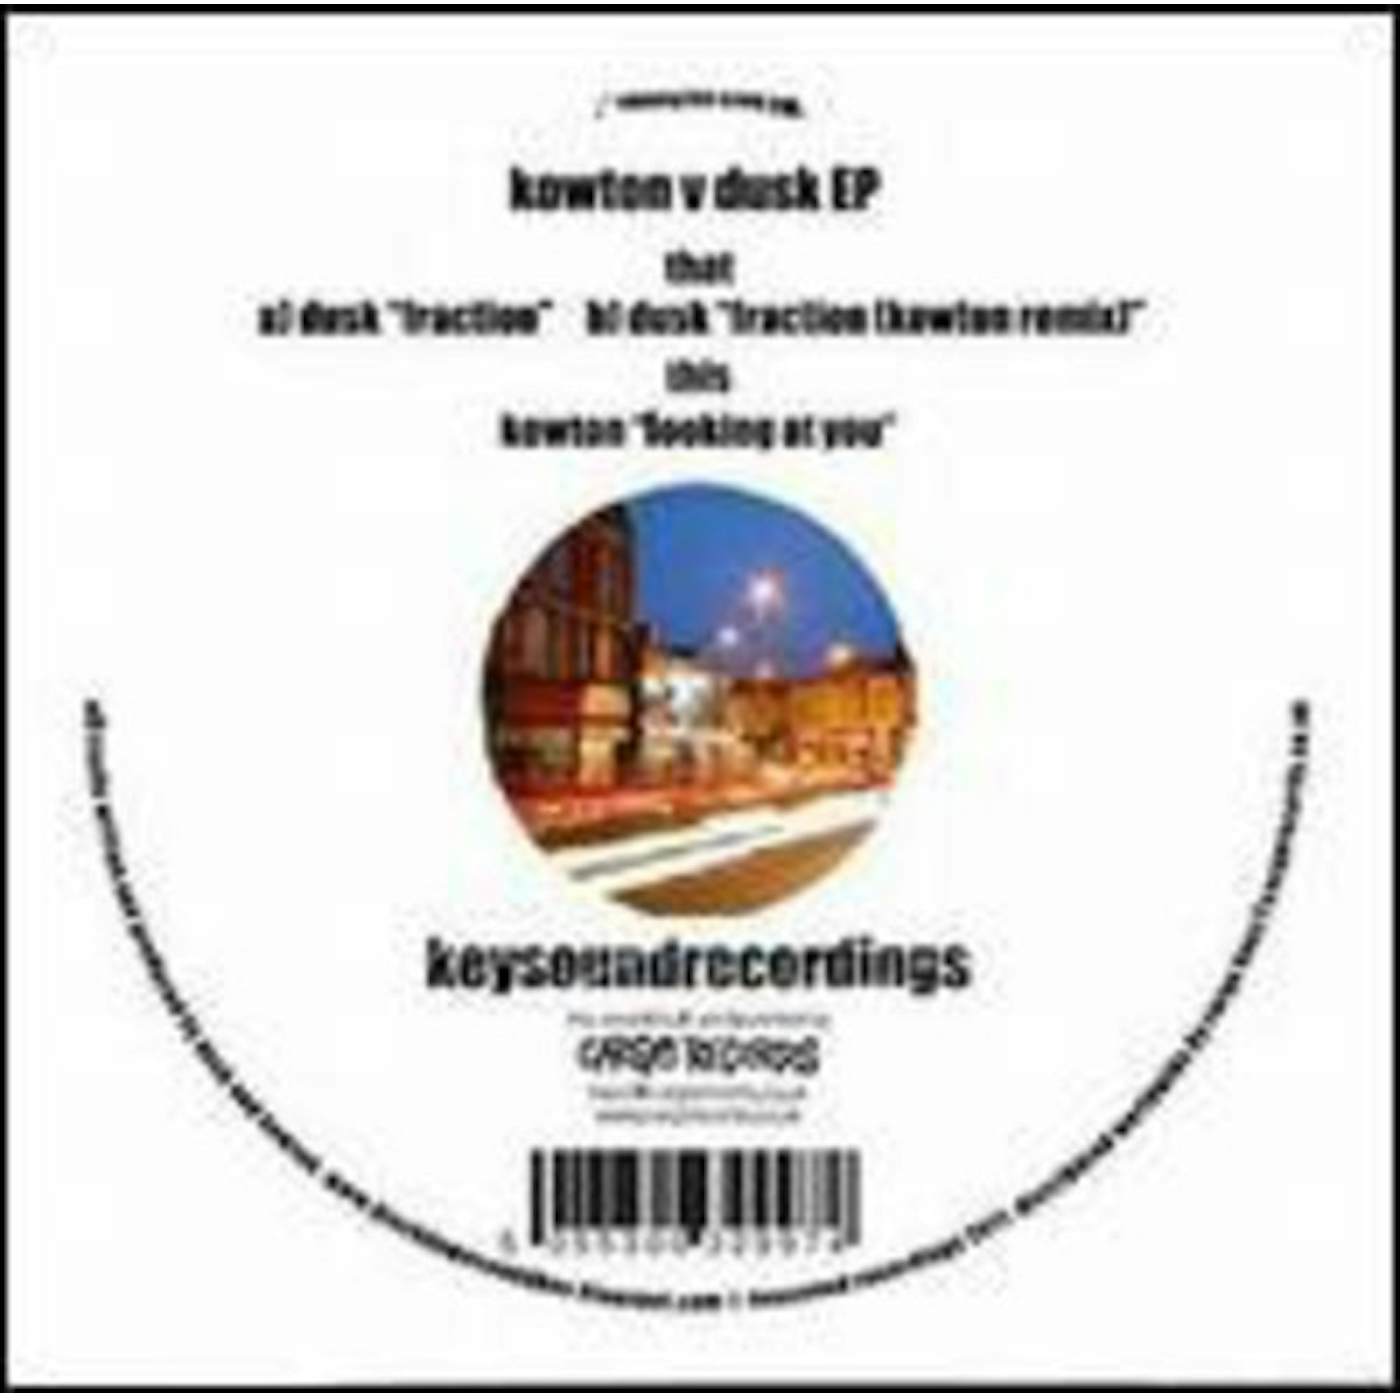 Kowton / Dusk KOWTON V DUSK Vinyl Record